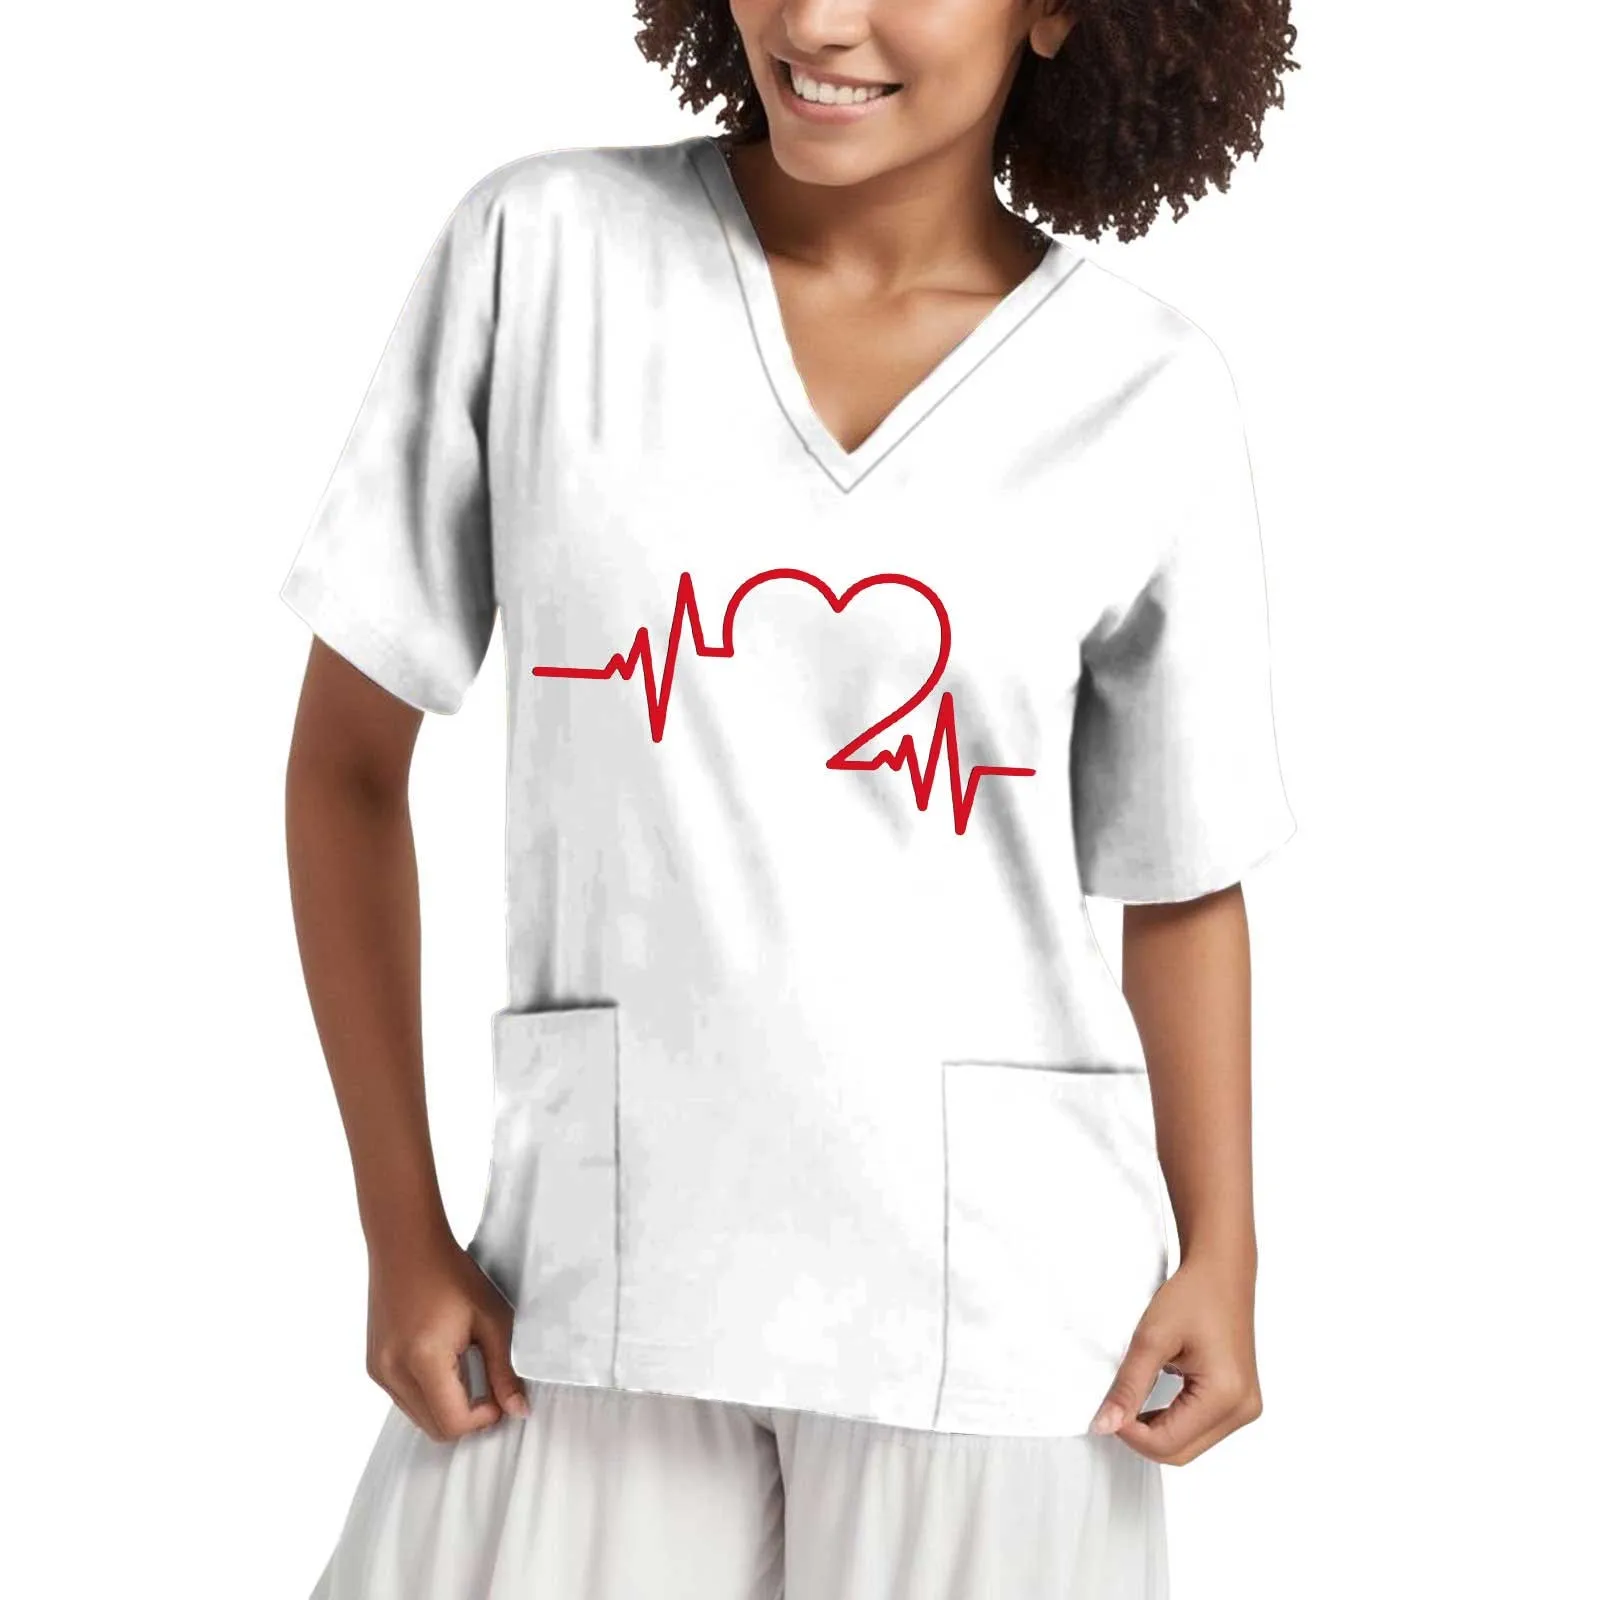 

Женская рабочая одежда с надписью Love, рабочая одежда для медсестры и хирургии, униформа для медсестры, санитарная одежда, медицинская хирургия, доктор, Ветеринария